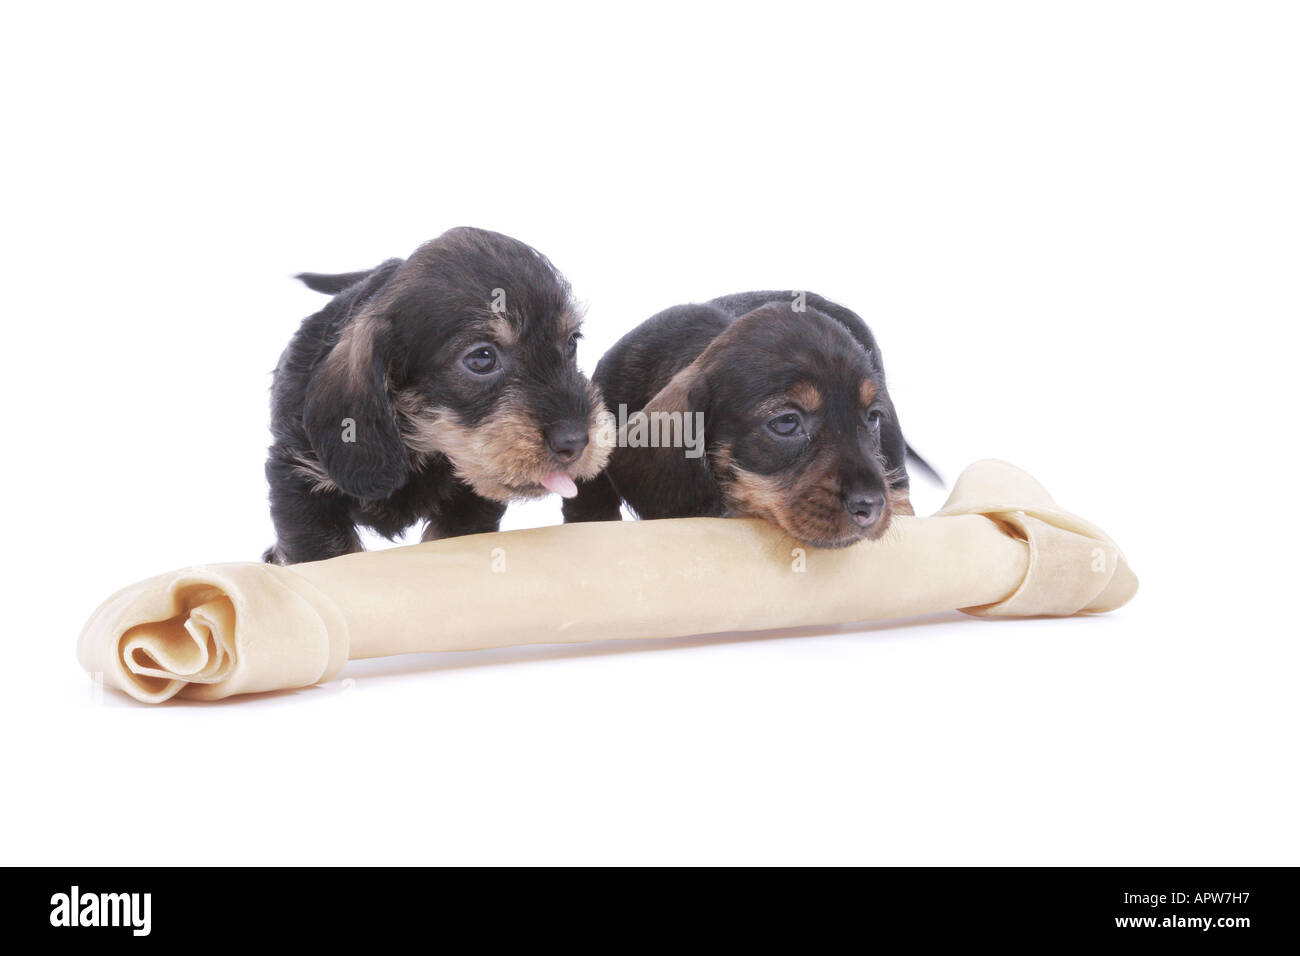 Teckel, chien saucisse, chien domestique (Canis lupus f. familiaris), deux chiots derrière un gros os Banque D'Images